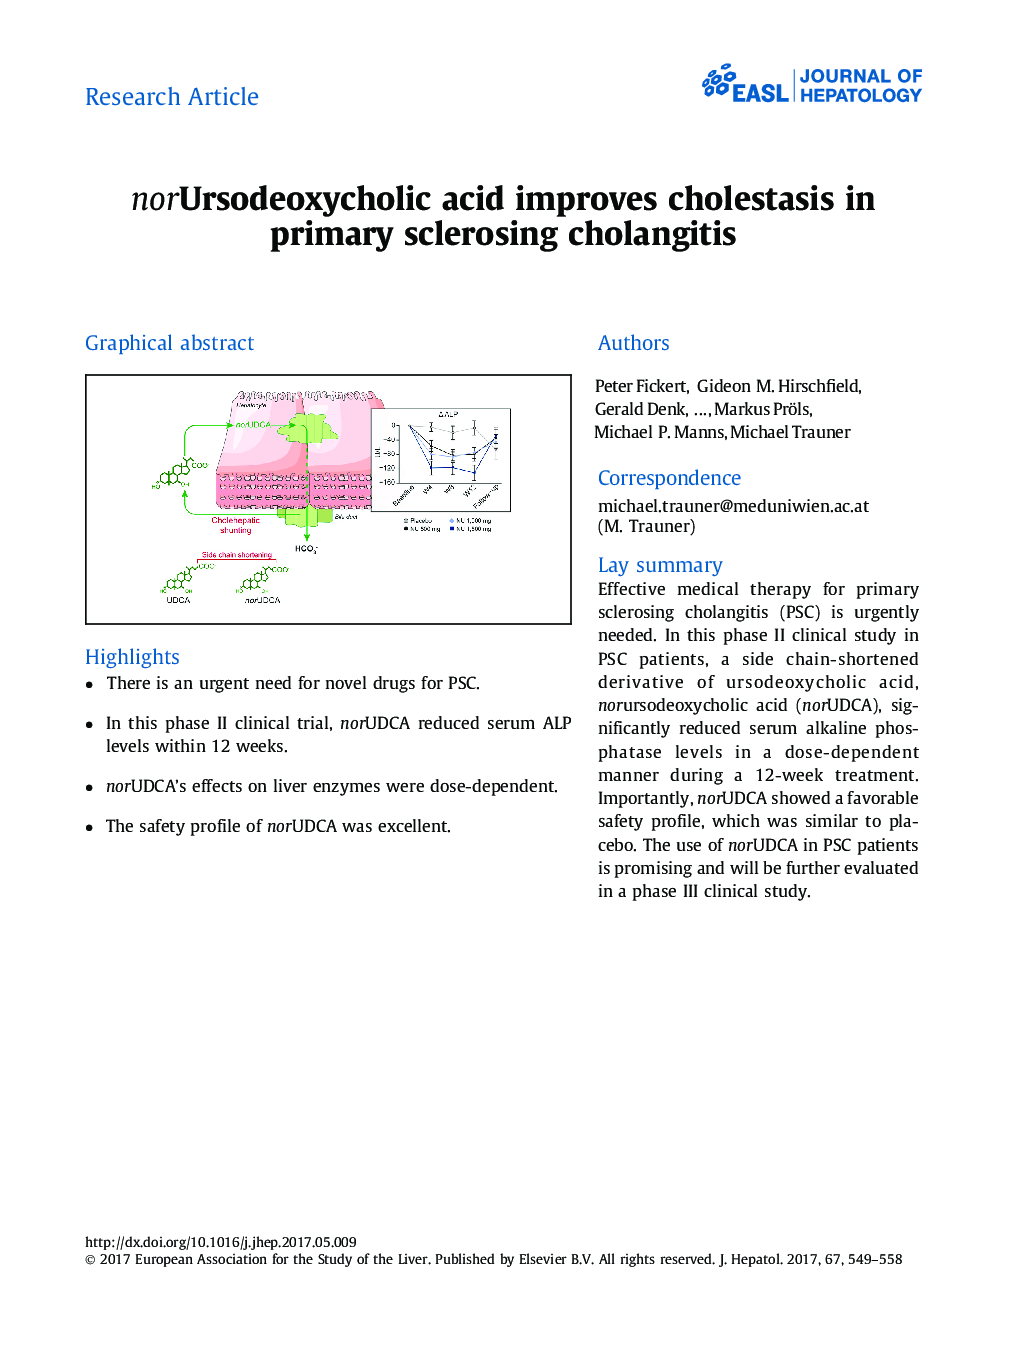 norUrsodeoxycholic acid improves cholestasis in primary sclerosing cholangitis